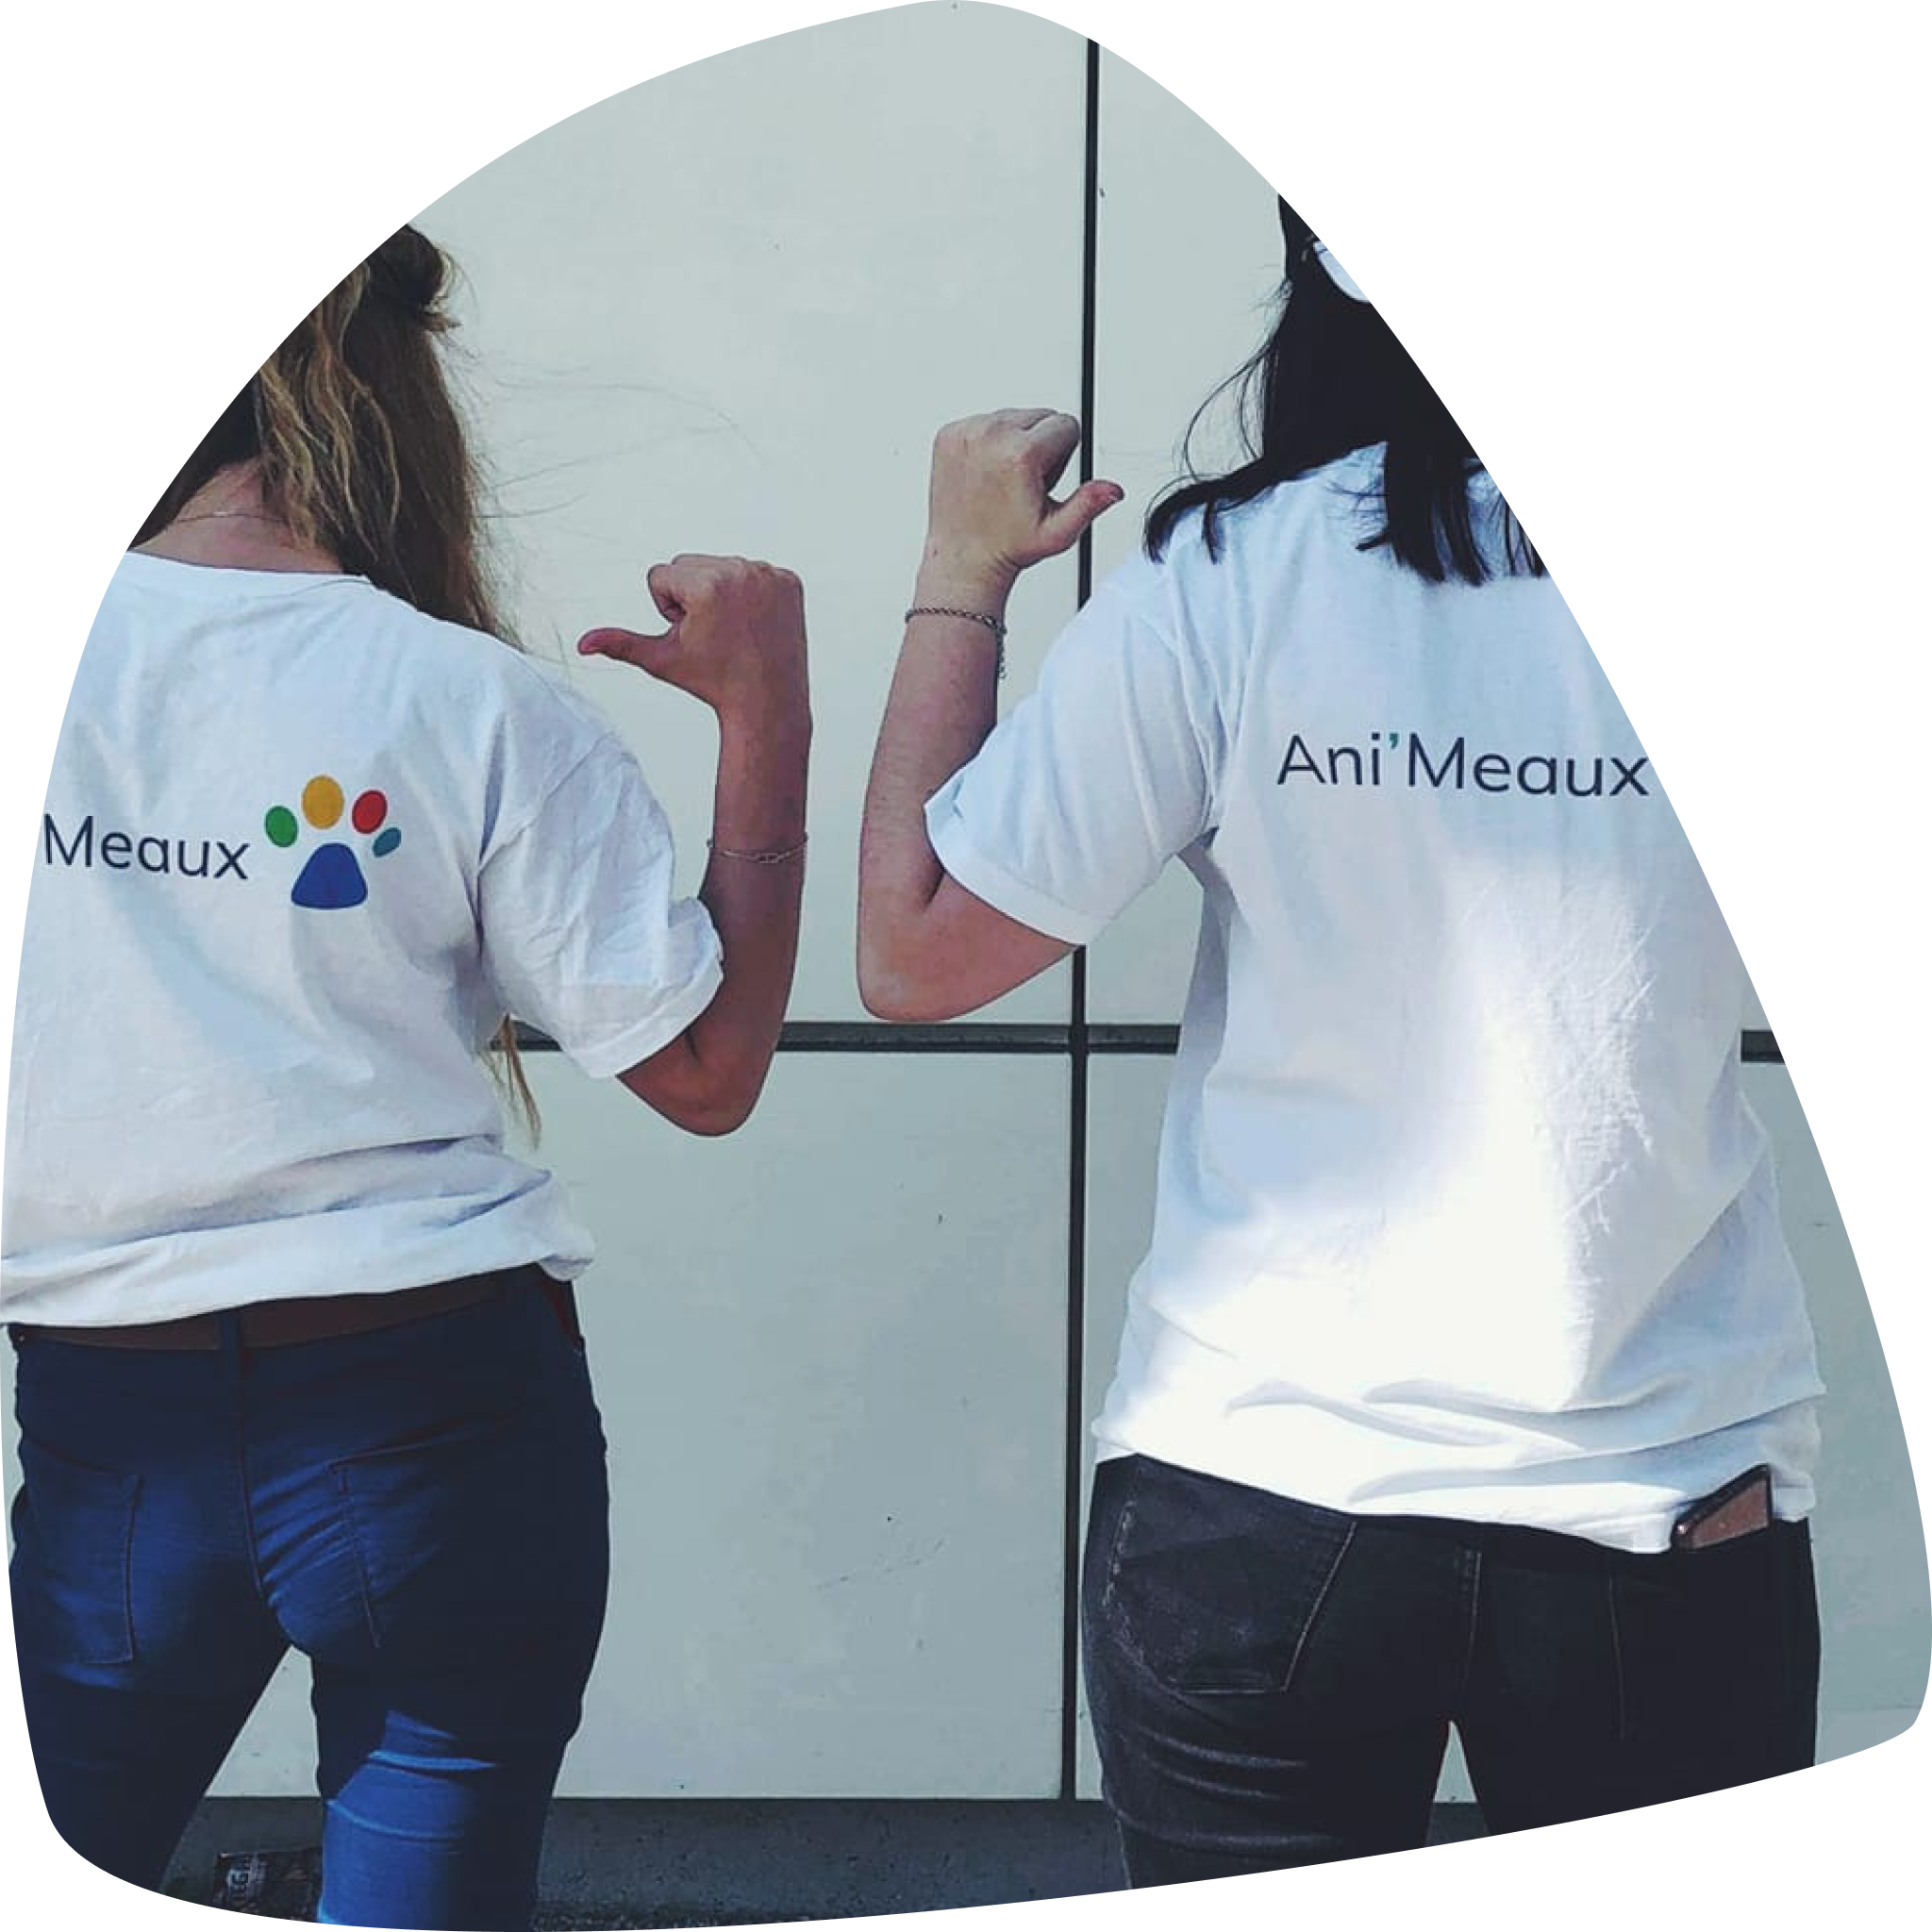 Deux volontaires de dos avec des t-shirts Ani’Meaux.